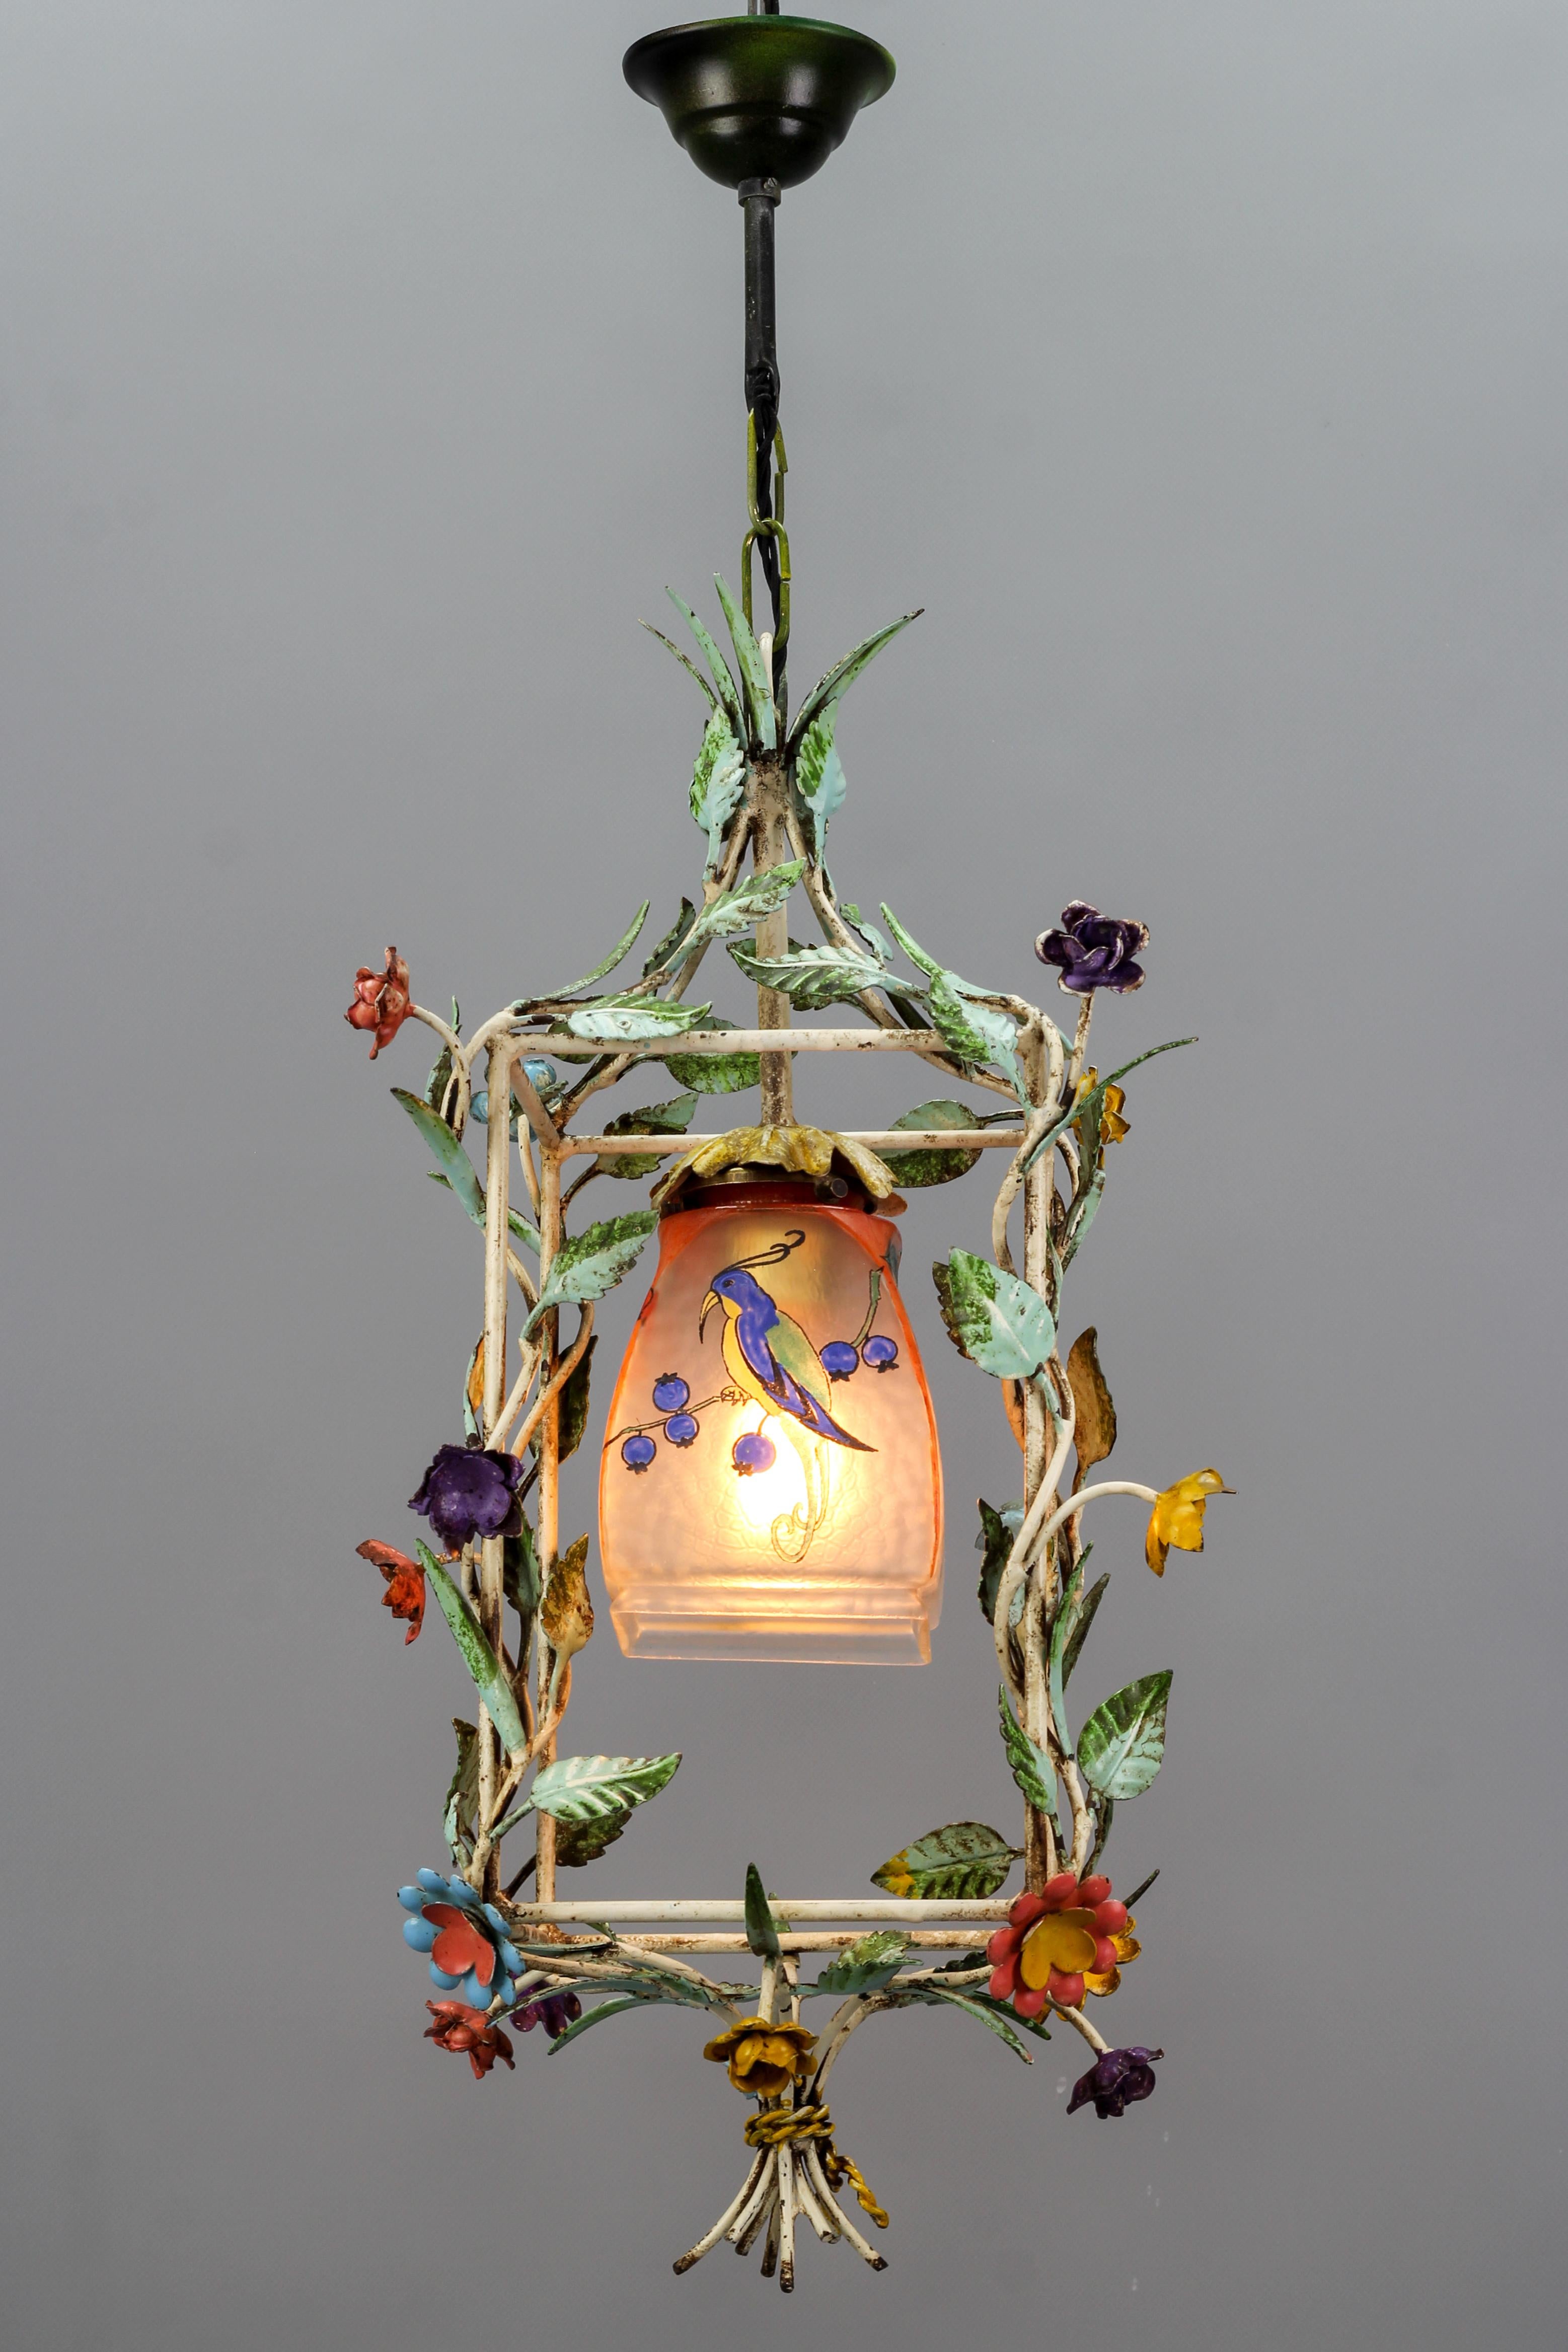 Pendentif en forme de cage à fleurs en verre polychrome pastel, datant des années 1950.
Adorable luminaire suspendu en forme de cage en métal peint à la main dans des tons pastel polychromes, orné de fleurs et de feuilles. L'abat-jour en verre